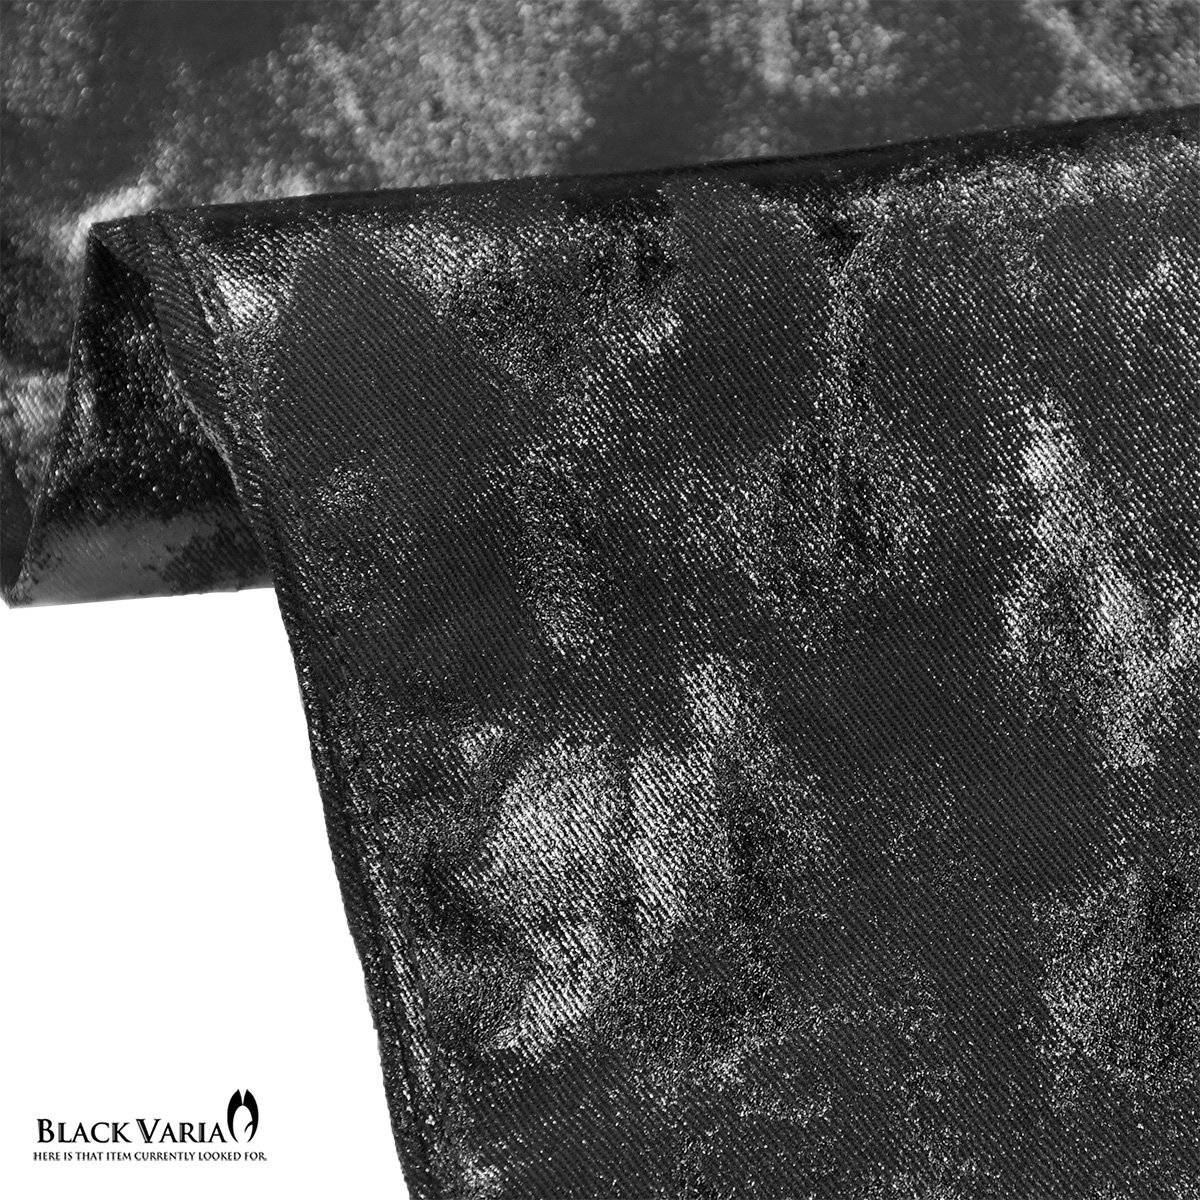 222851-bkmt BlackVaria ロングパンツ 箔プリント 光沢 ブーツカット ローライズ シューカット メンズ(ムラ柄ブラック黒) L31 股上浅め_画像9